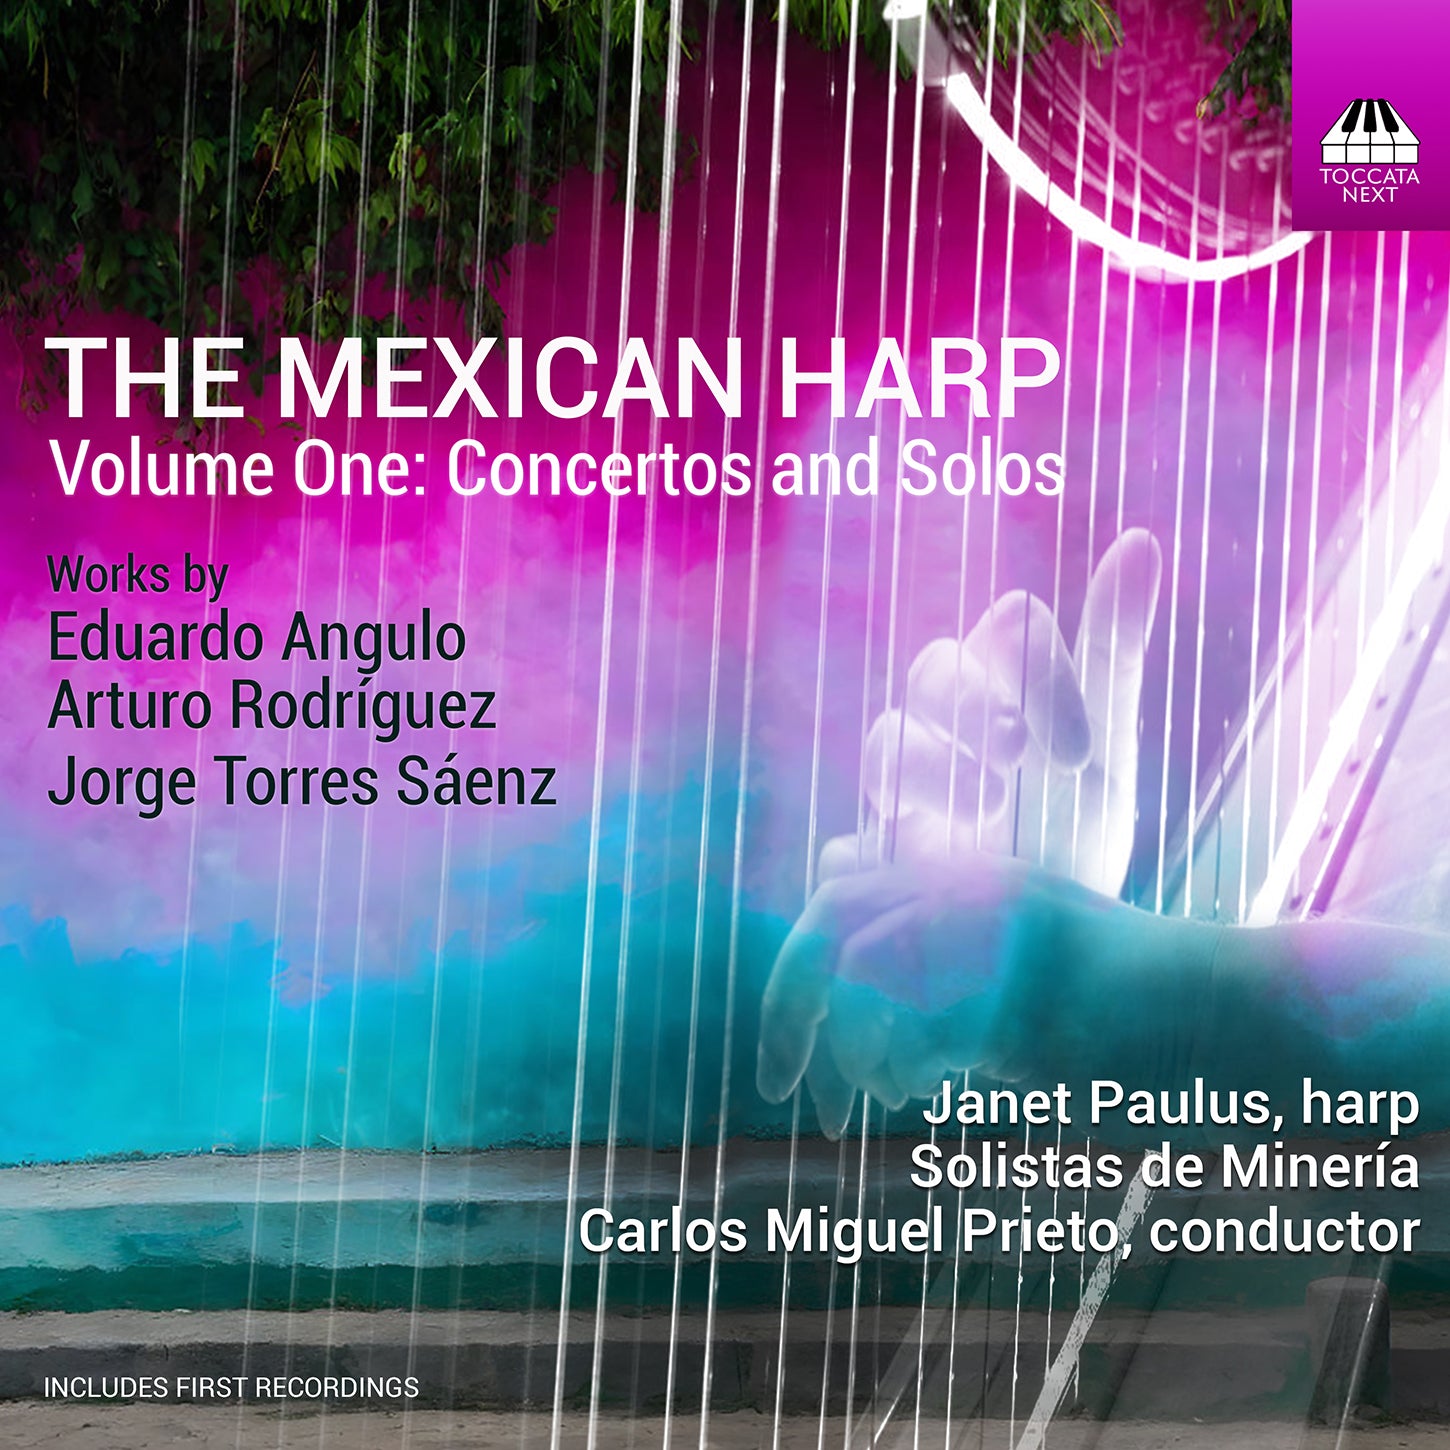 The Mexican Harp, Vol. 1 - Concertos & Solos / Paulus, Prieto, Solistas de Minería